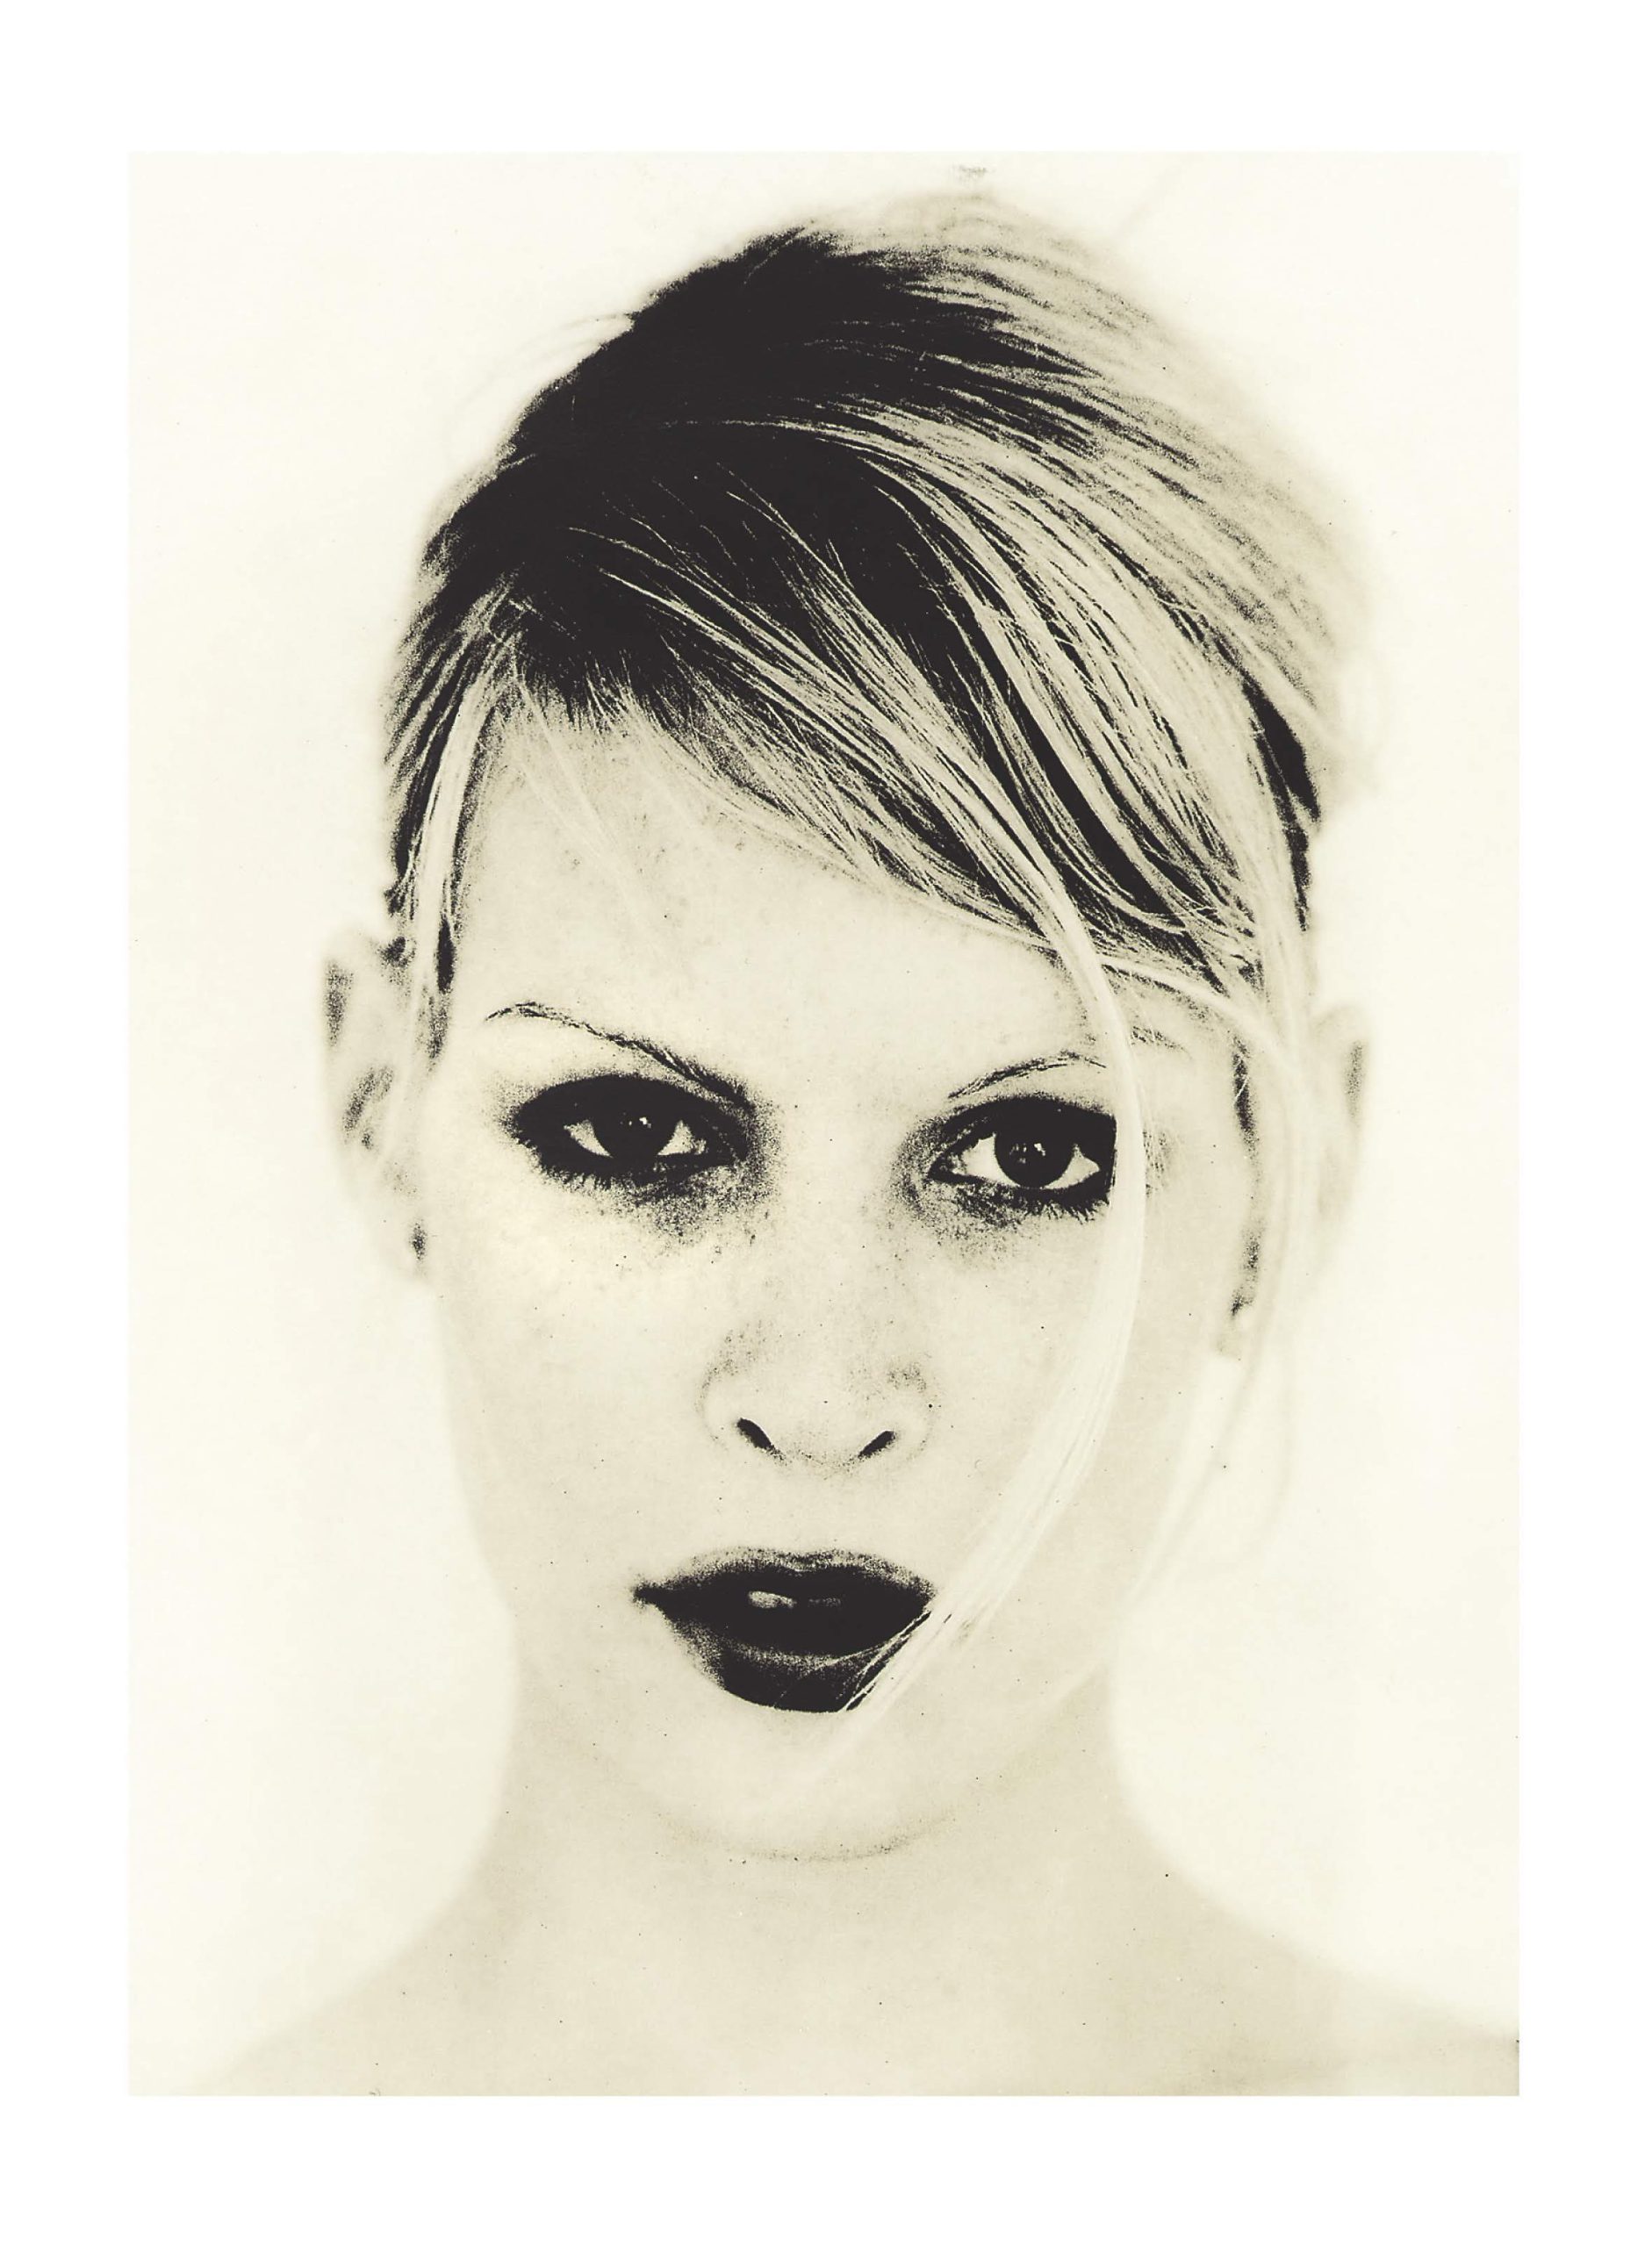 Analog lith print portraits of young woman lookinag at camera. Vertical studio shot.